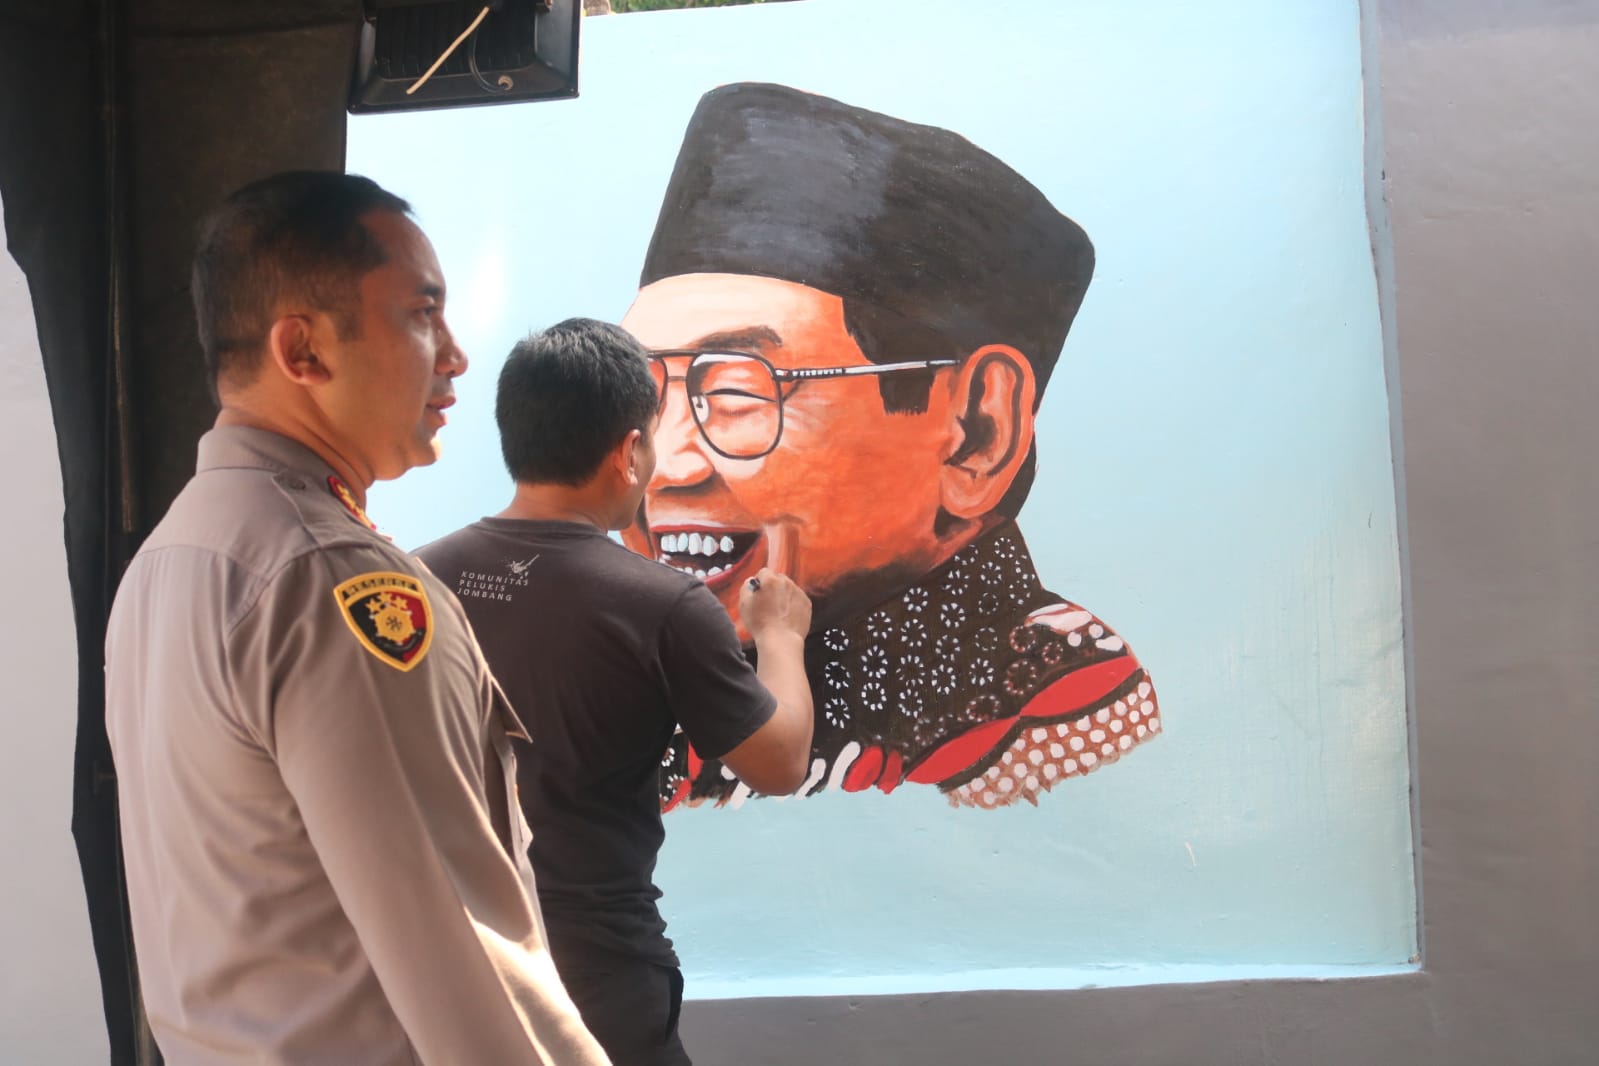 Suguhkan Inspirasi Positif Bagi Masyarakat, Kapolres Jombang Ajak Seniman Lukis Mural